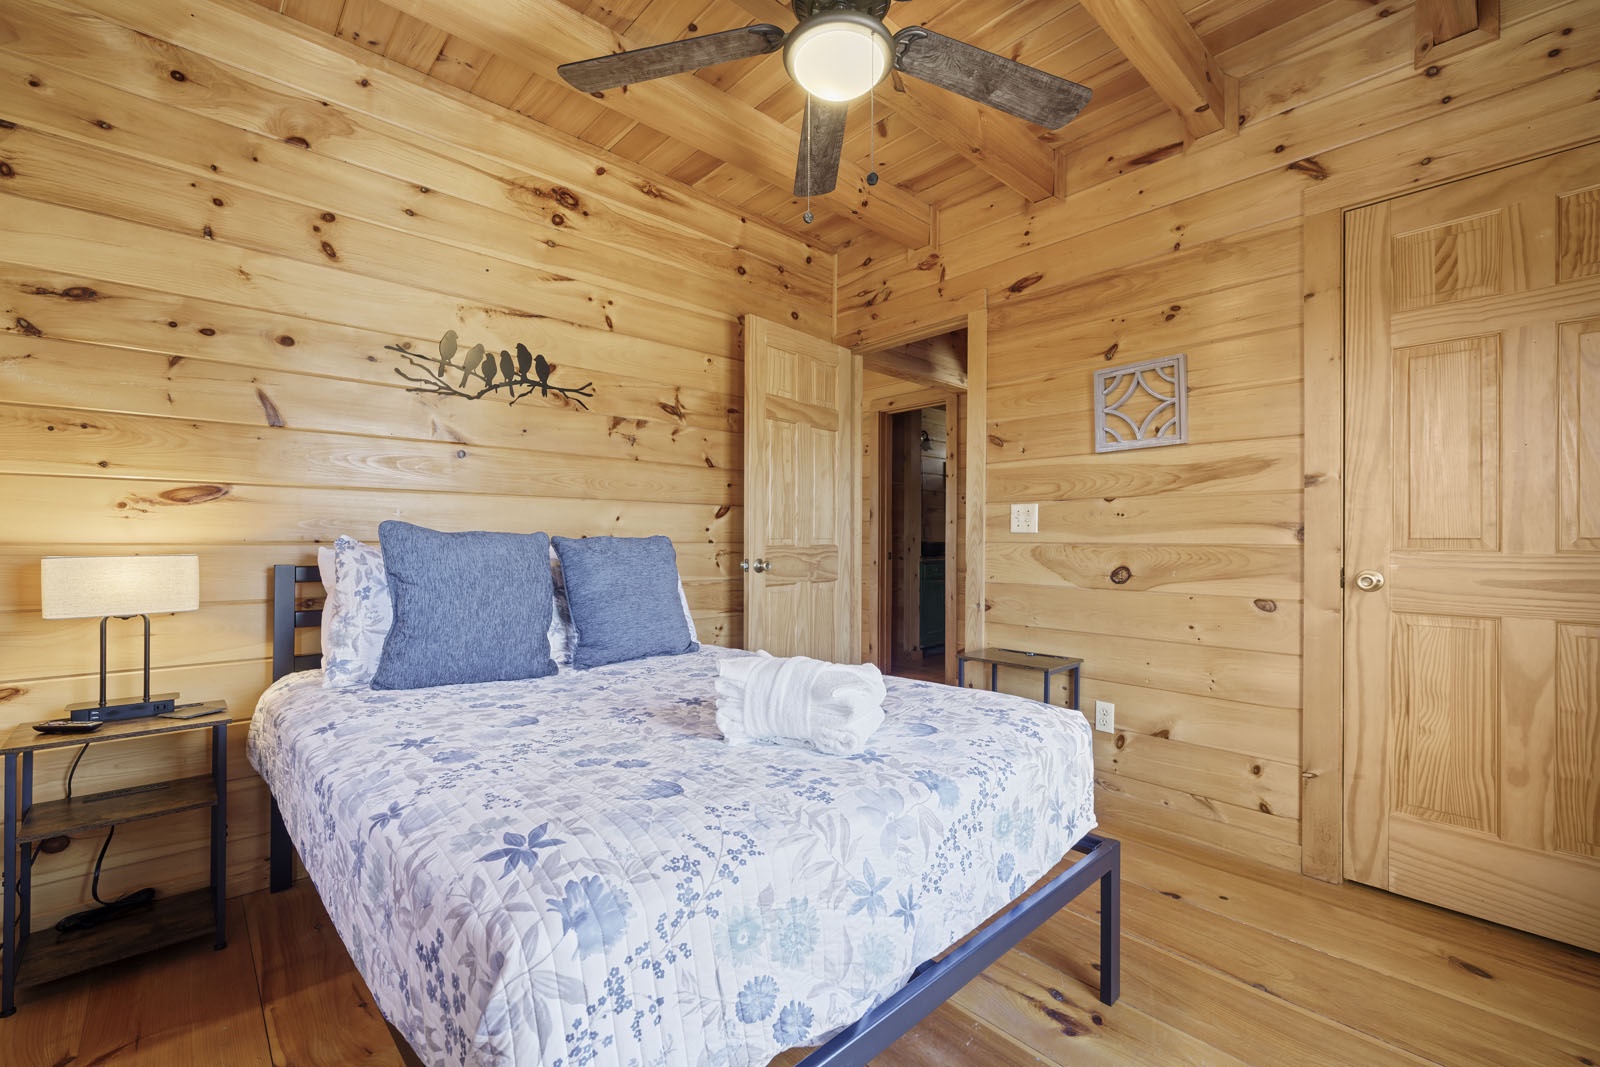 Lake Ridge - Entry Level Queen Bedroom